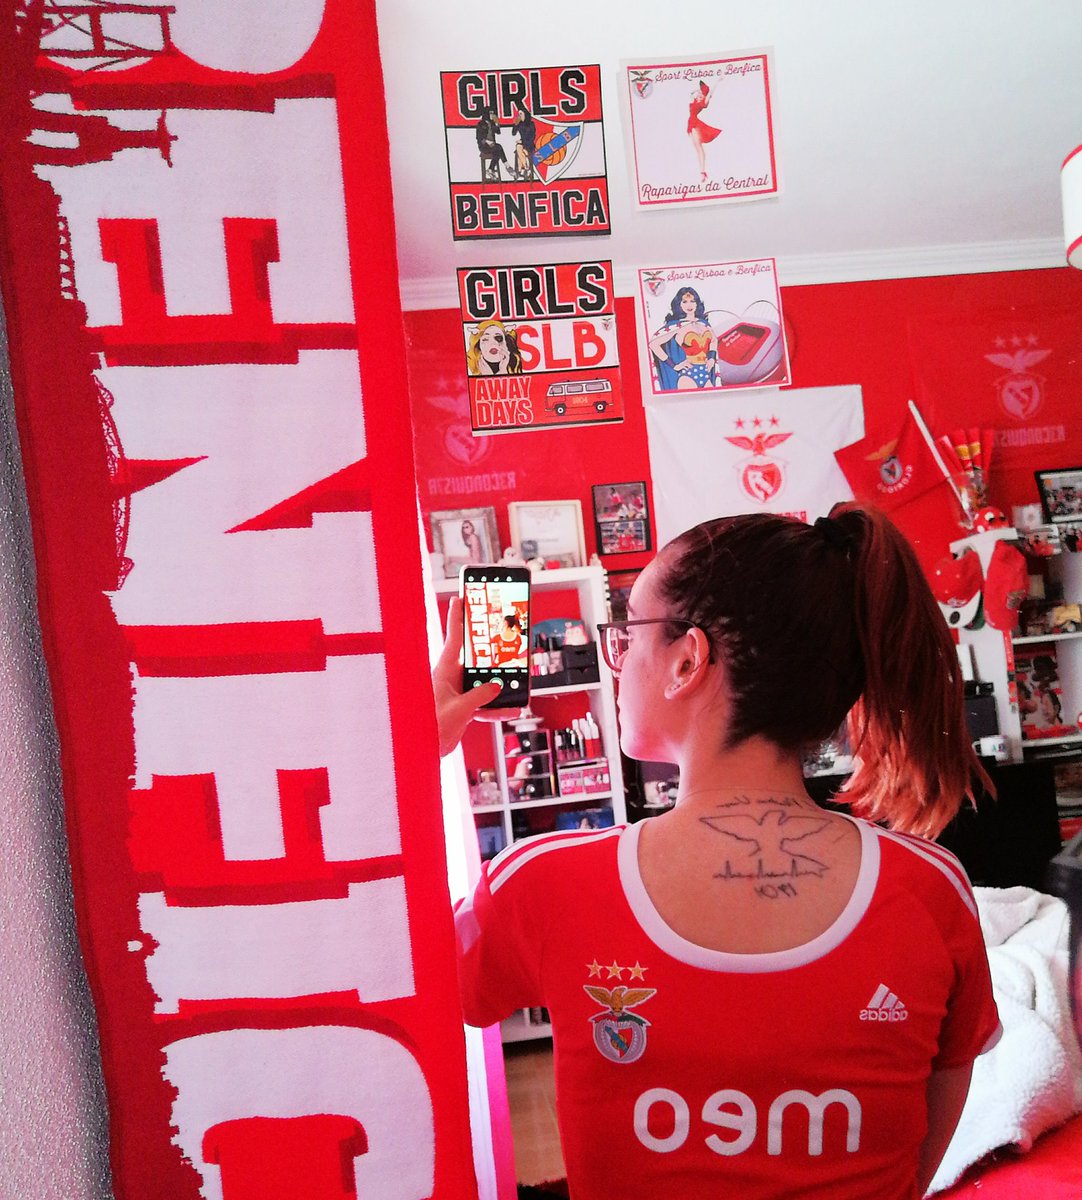 Vamos lá meninas! #BenficaGirls 🔥🅱️